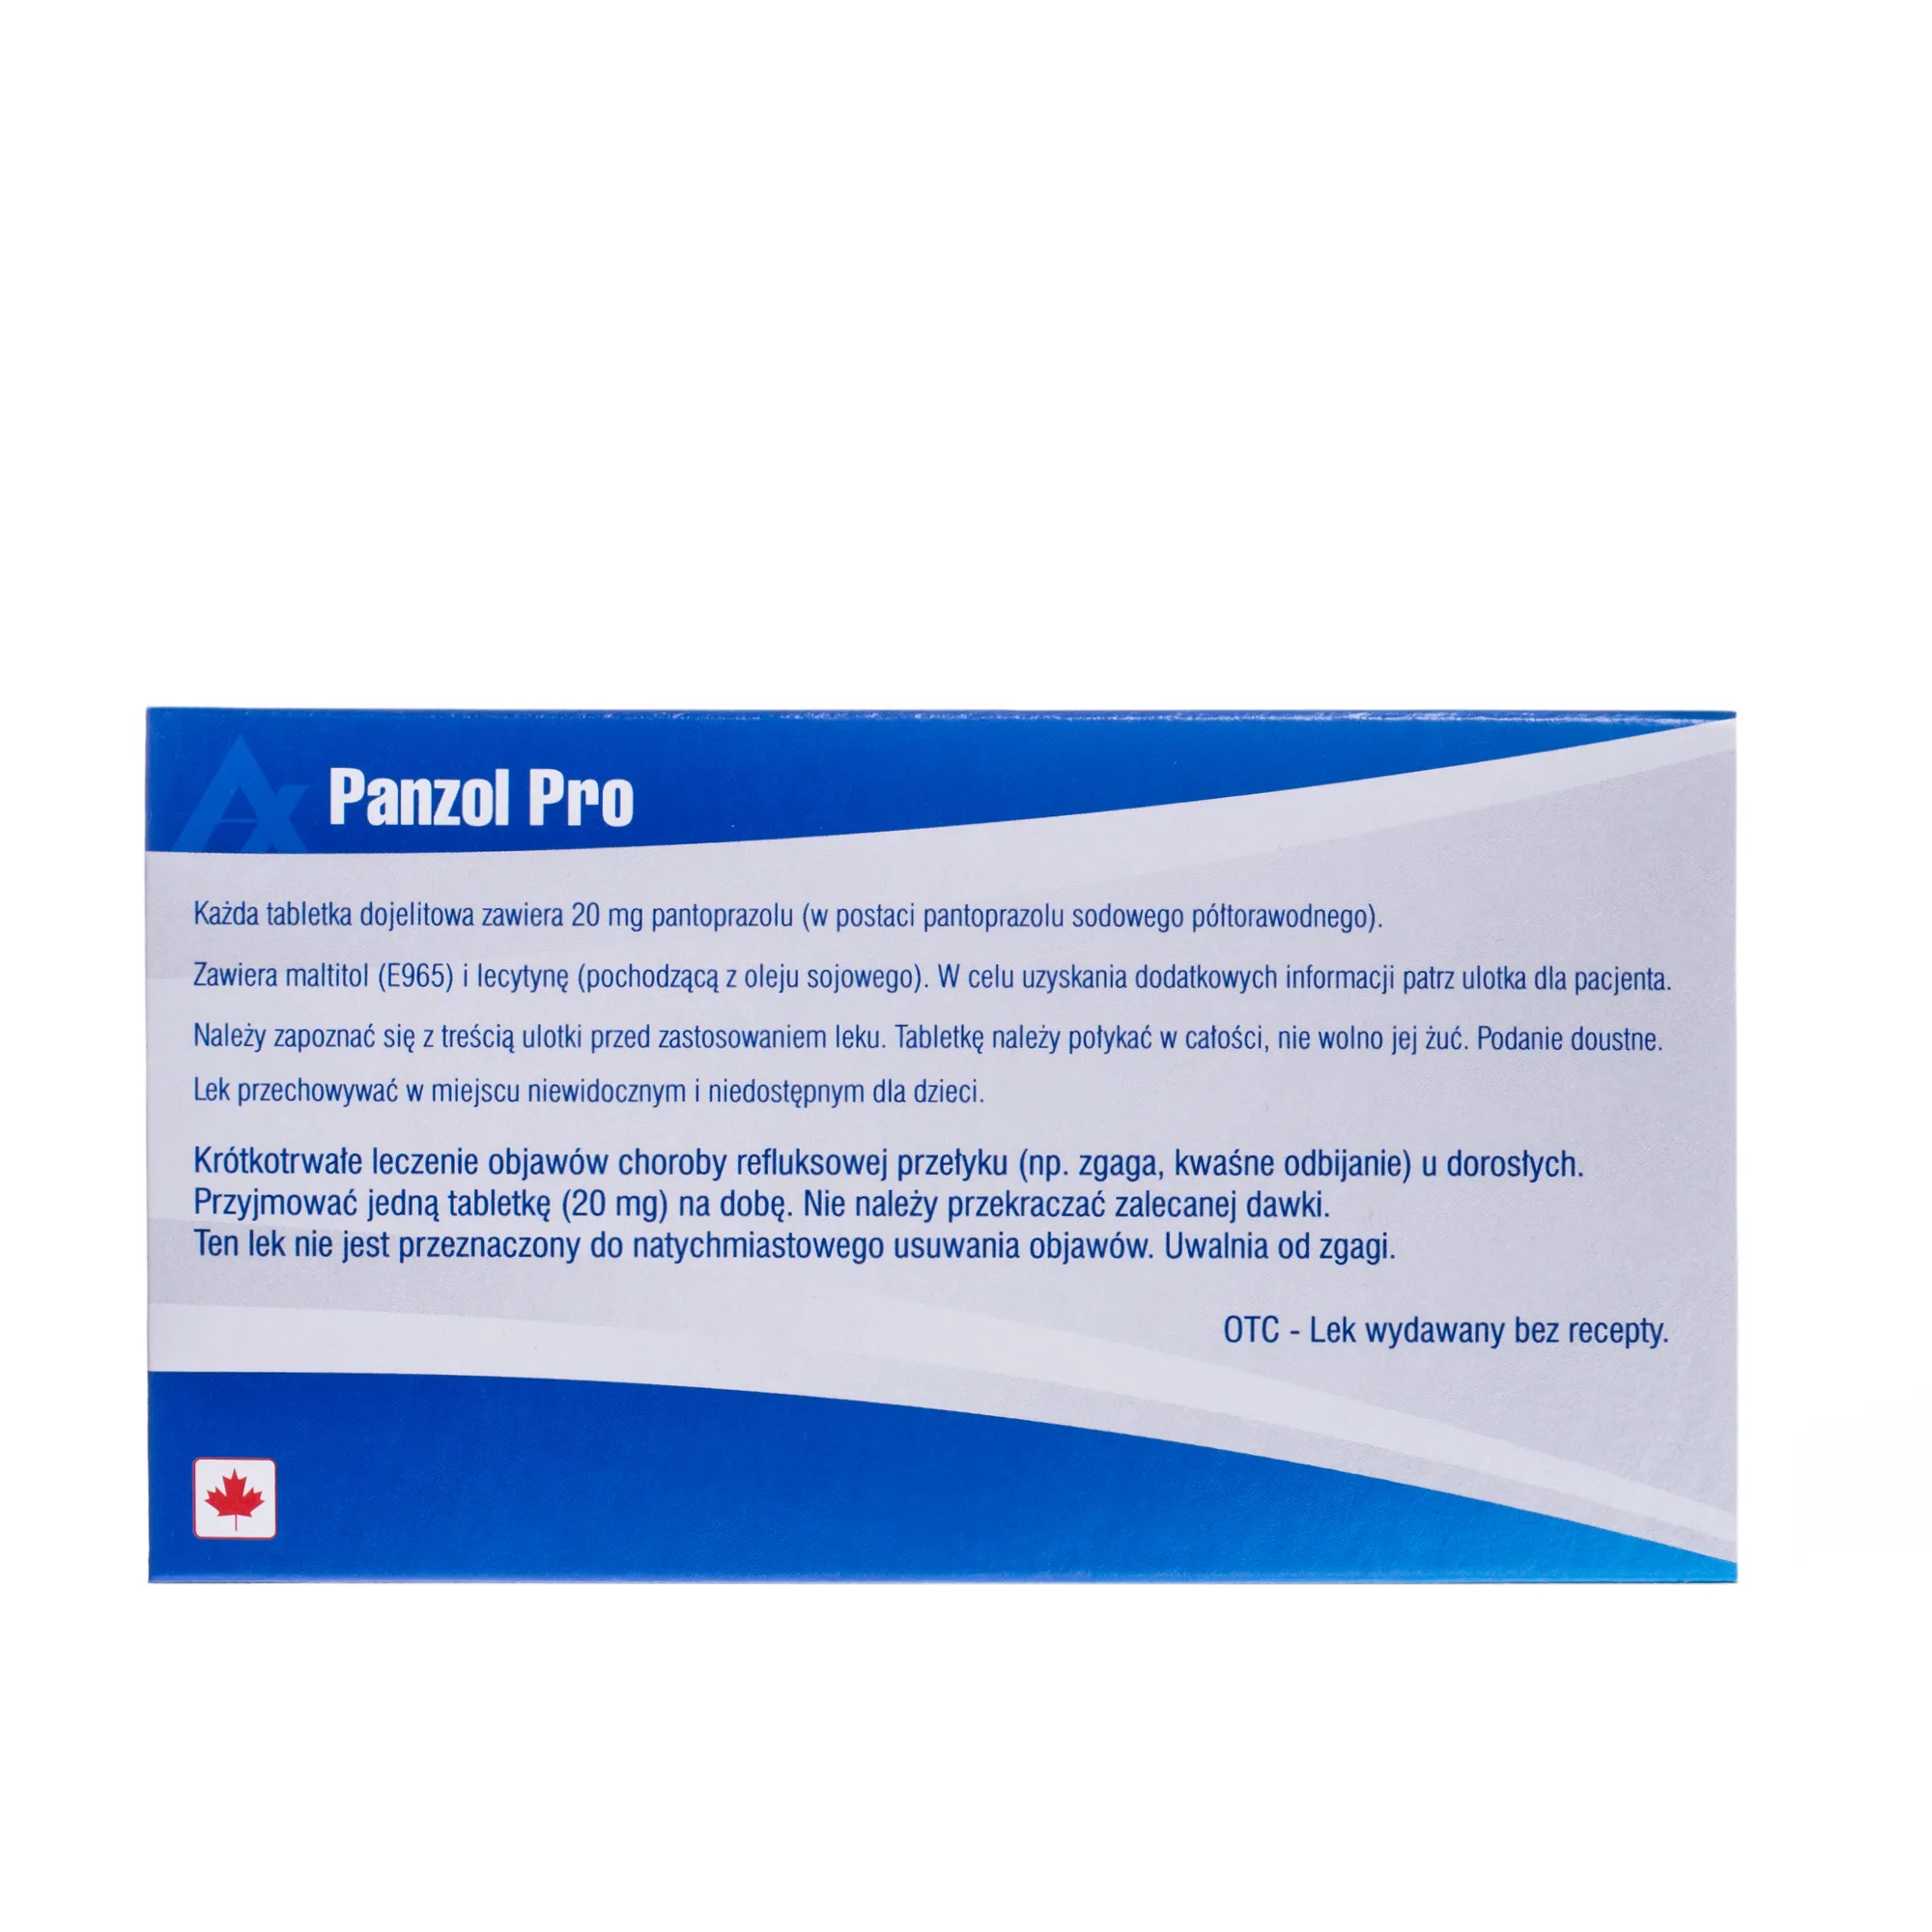 Panzol Pro, uwalnia od zgagi, 14 tabletek 